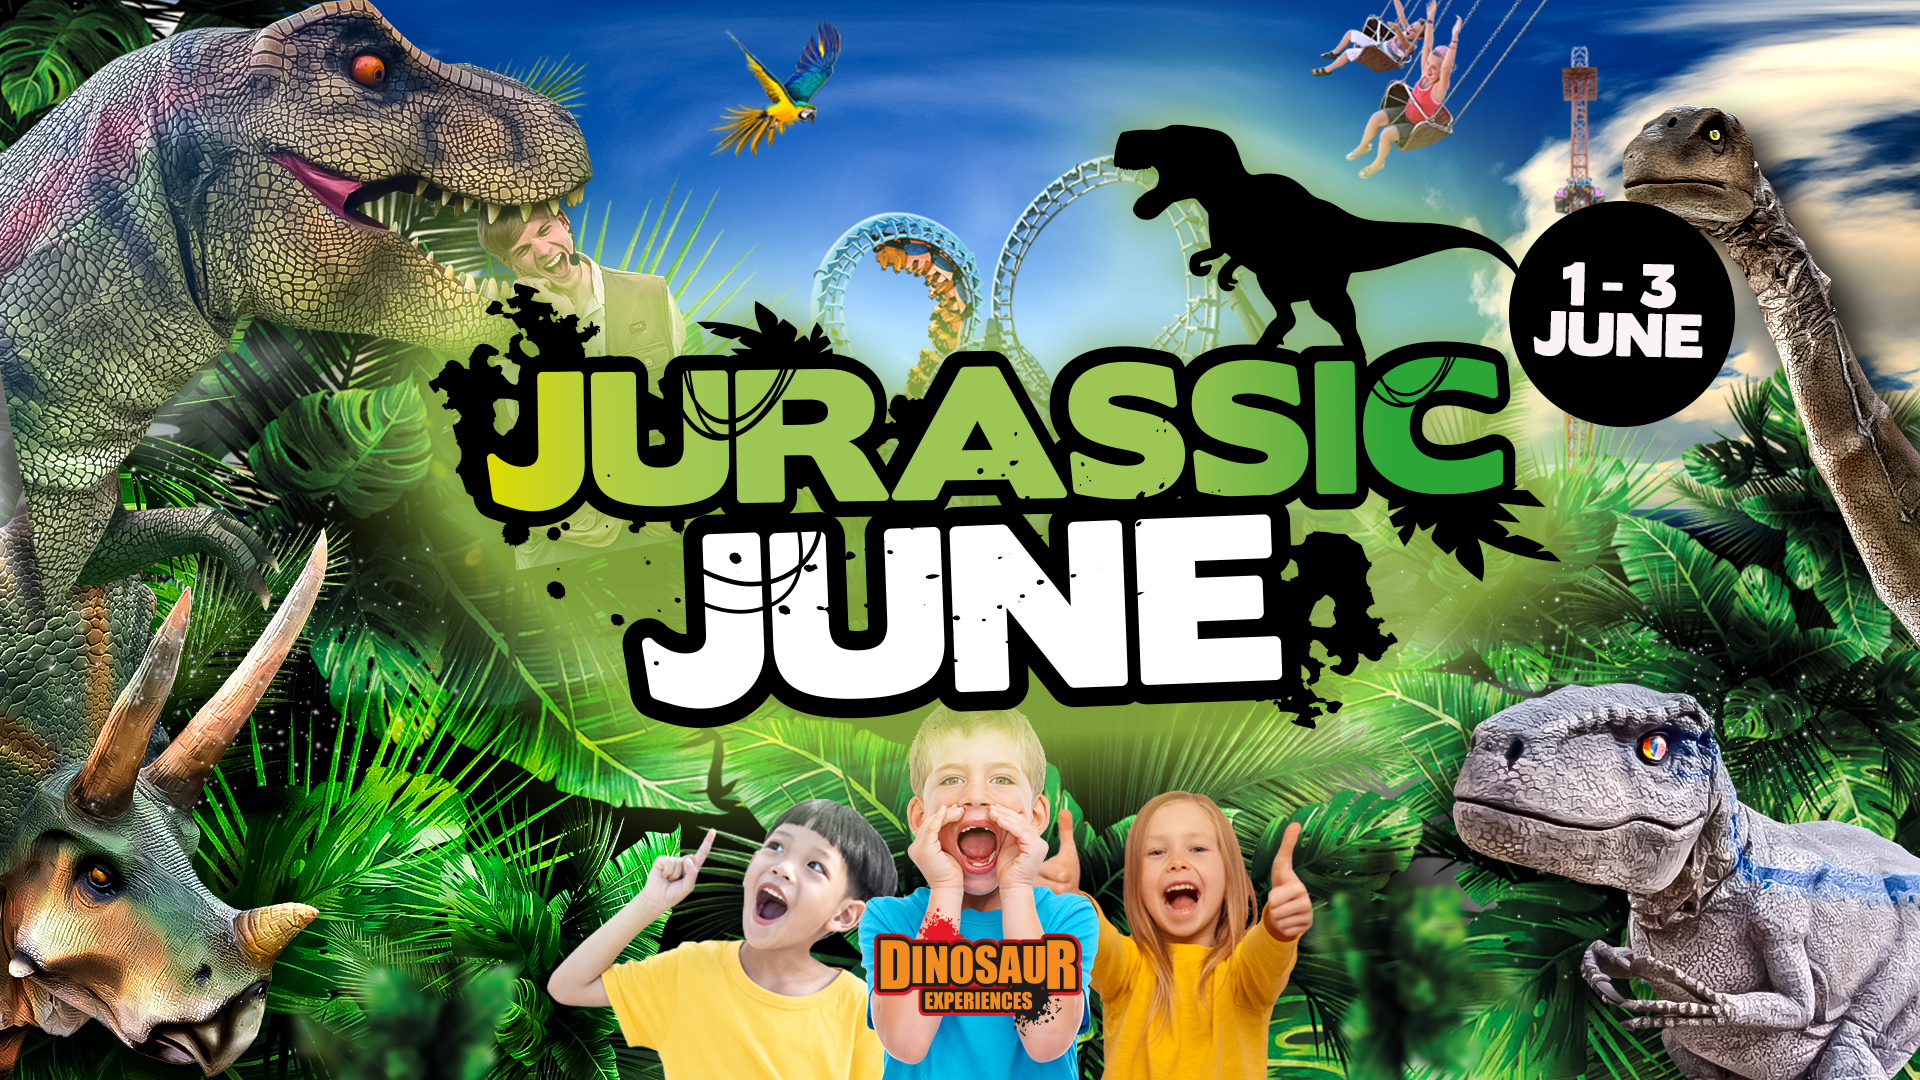 Dinosaurs at Pleasurewood Hills 1-3 June